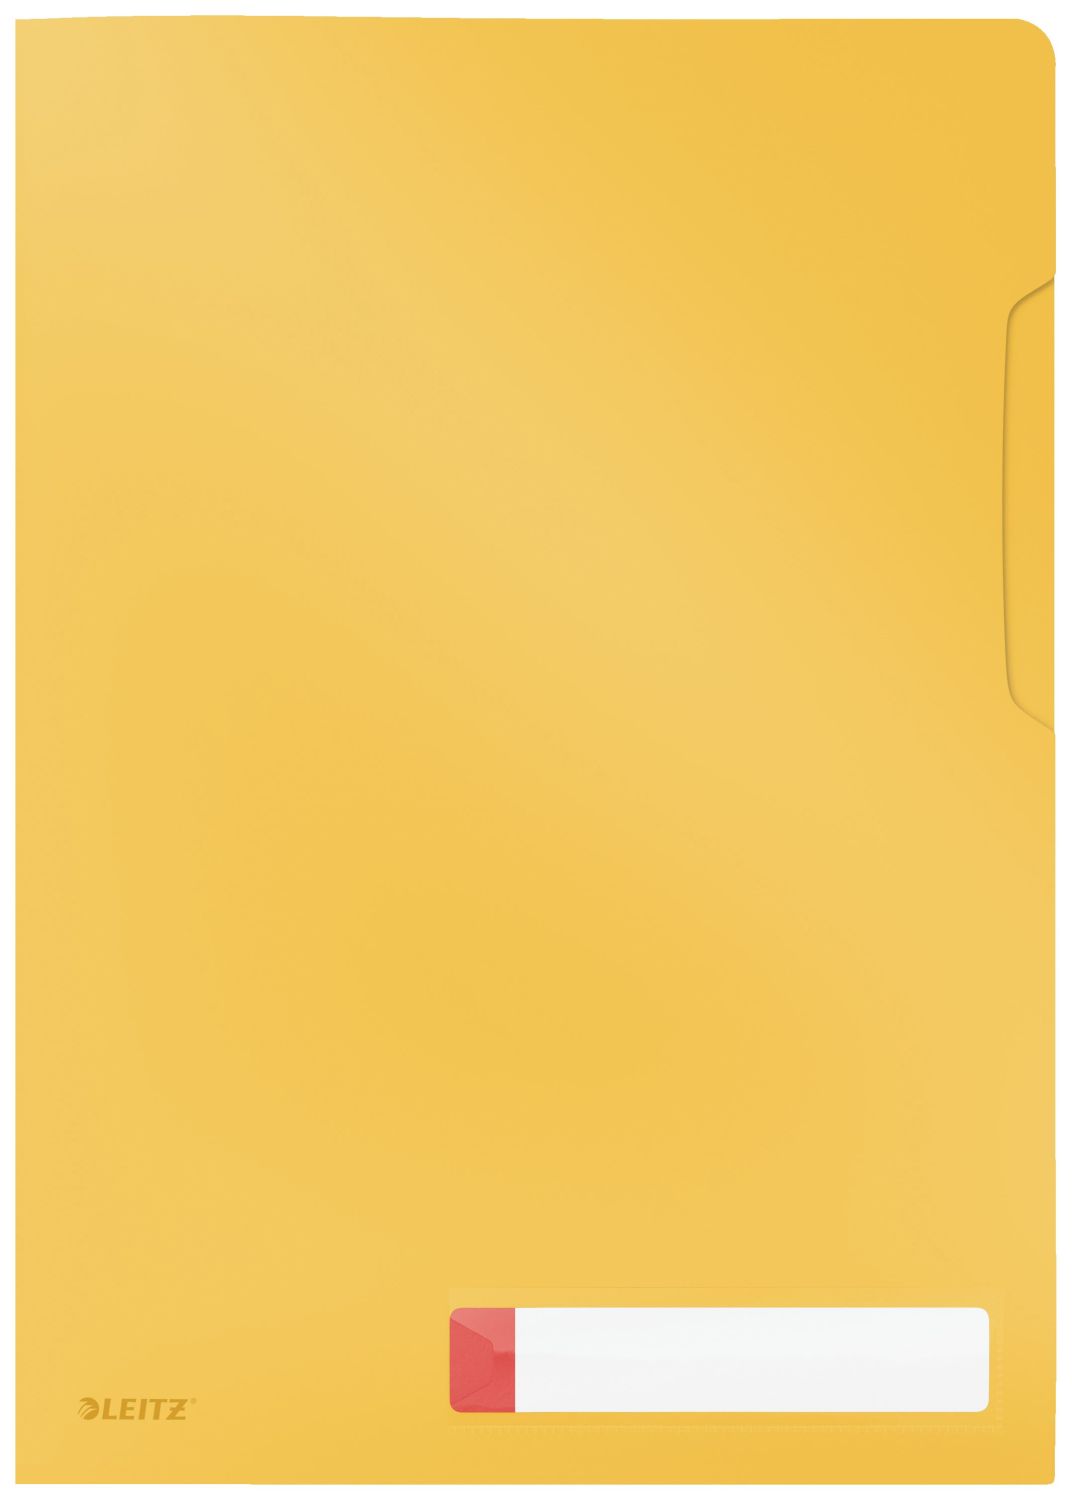 Sichthüllen Leitz Privacy 4708-00-19, DIN A4, 0,20 mm PP, blickdicht, gelb matt, 3 Stück